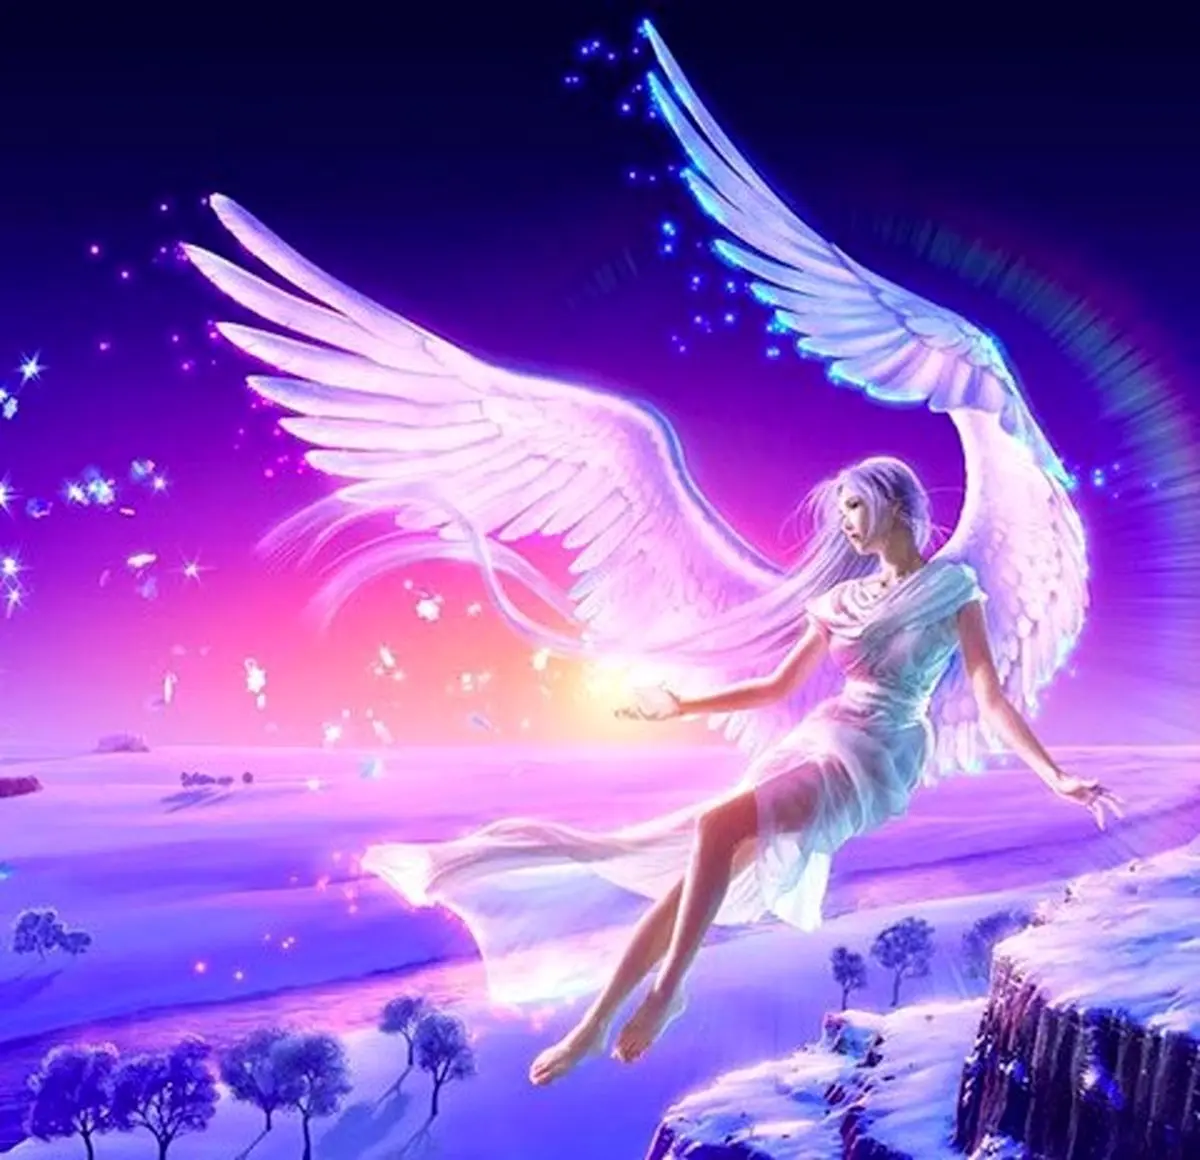 فال فرشتگان 17 آبان ماه | فرشتگان برای شما چه پیام مثبتی دارند؟